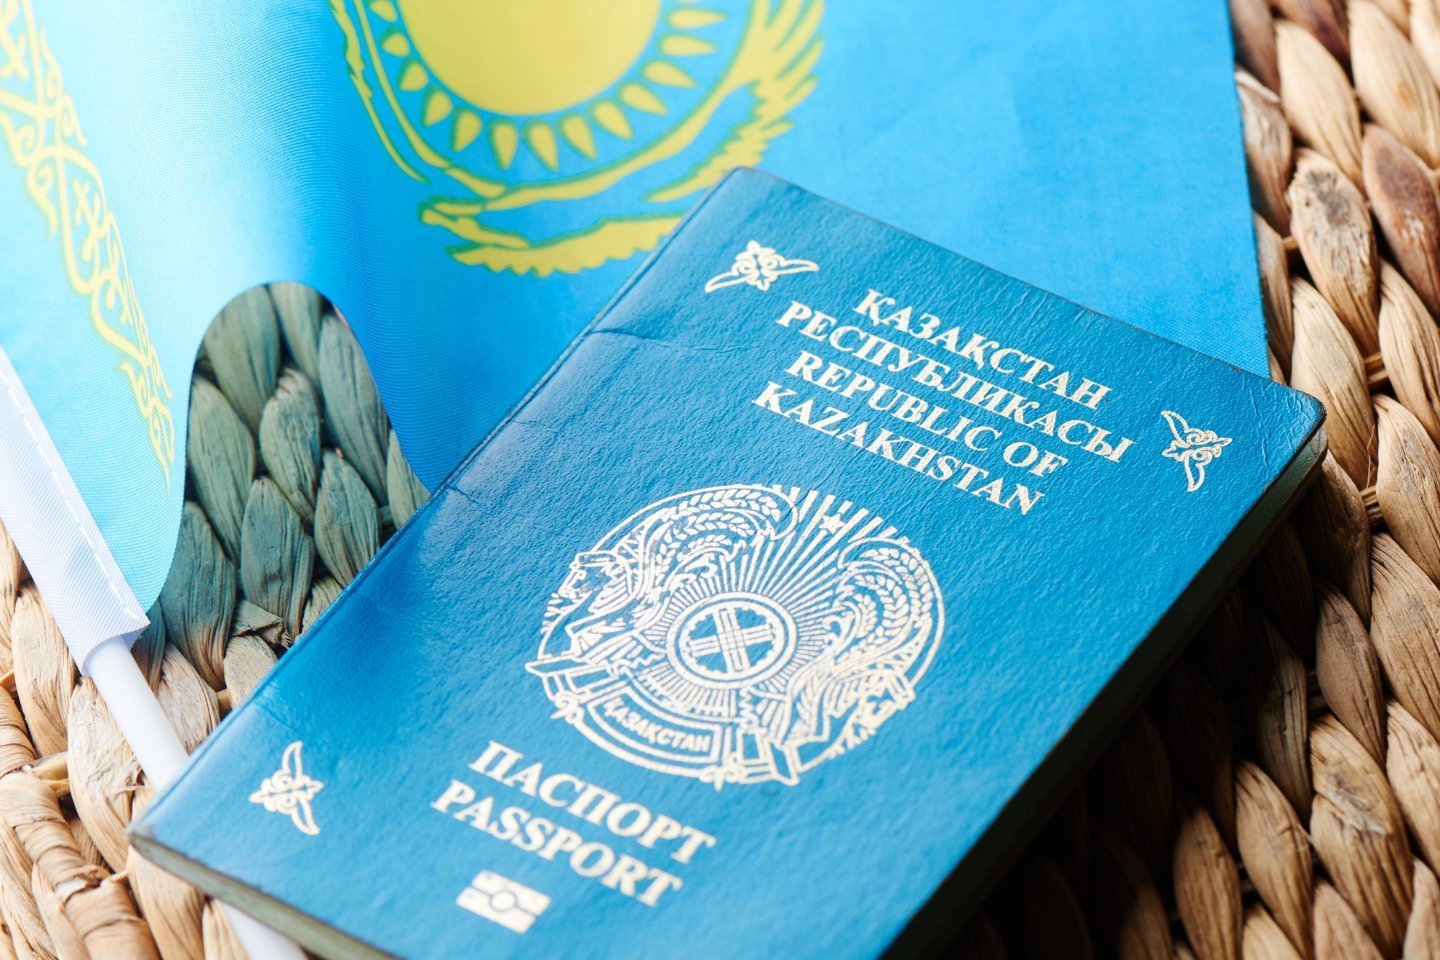 Новости Казахстана / Общество в Казахстане / По силе паспорта Казахстан обошел все страны Центральной Азии